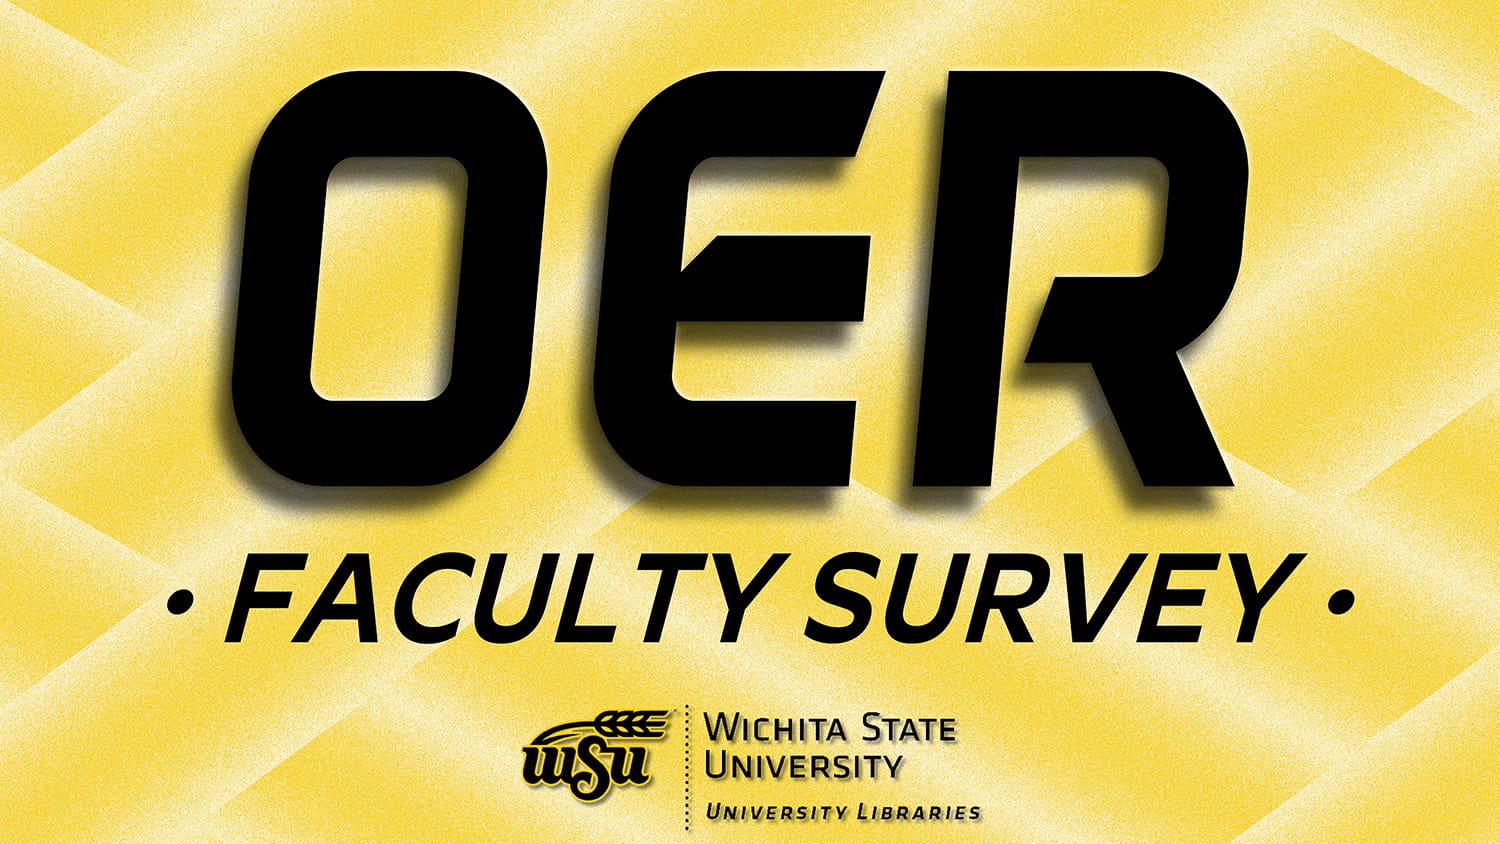 OER faculty survey